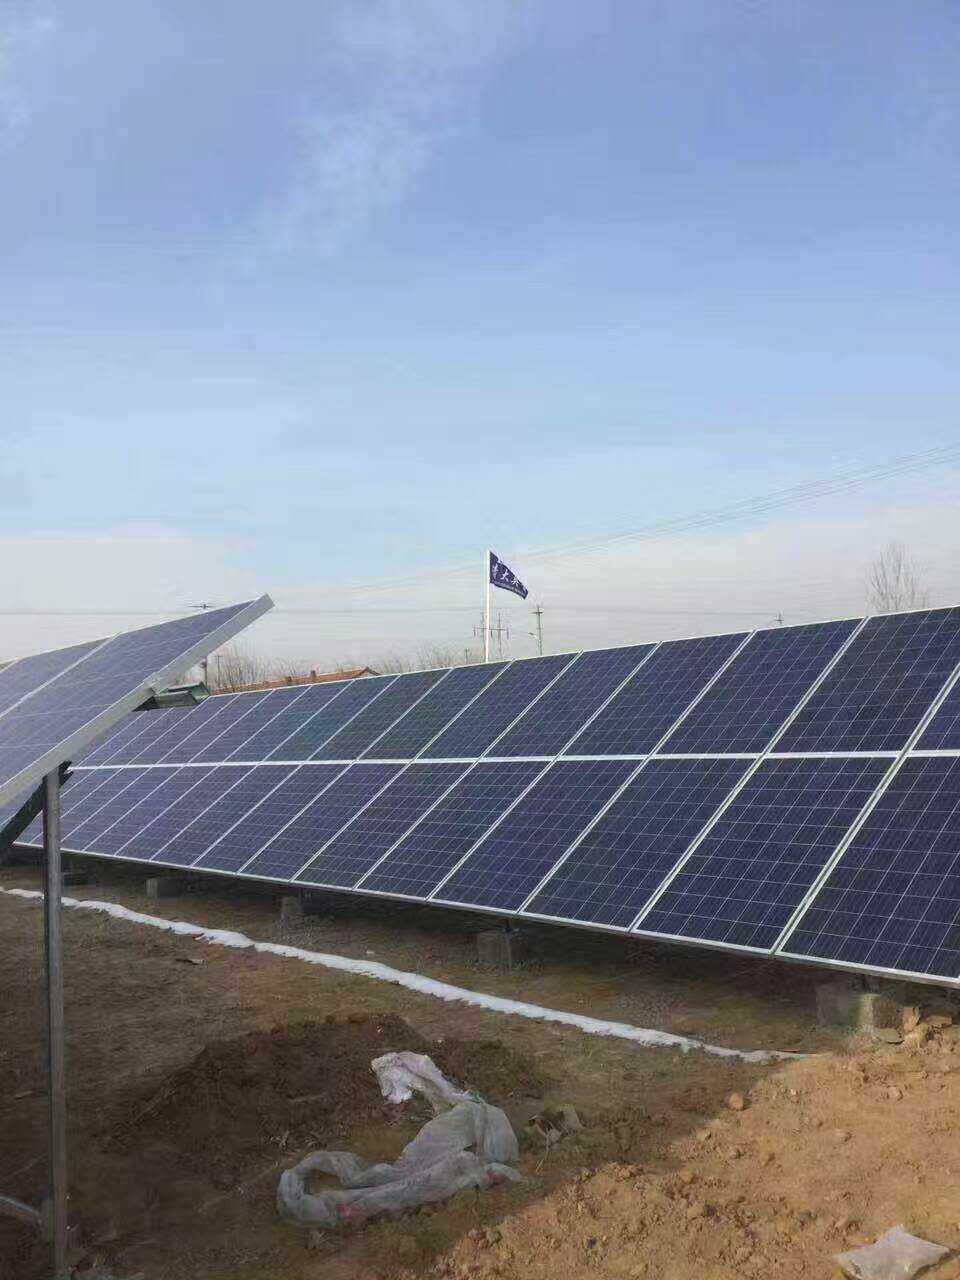 敦化厂家热销节能太阳电池板 敦化供应优质太阳能发电设备 质量保证